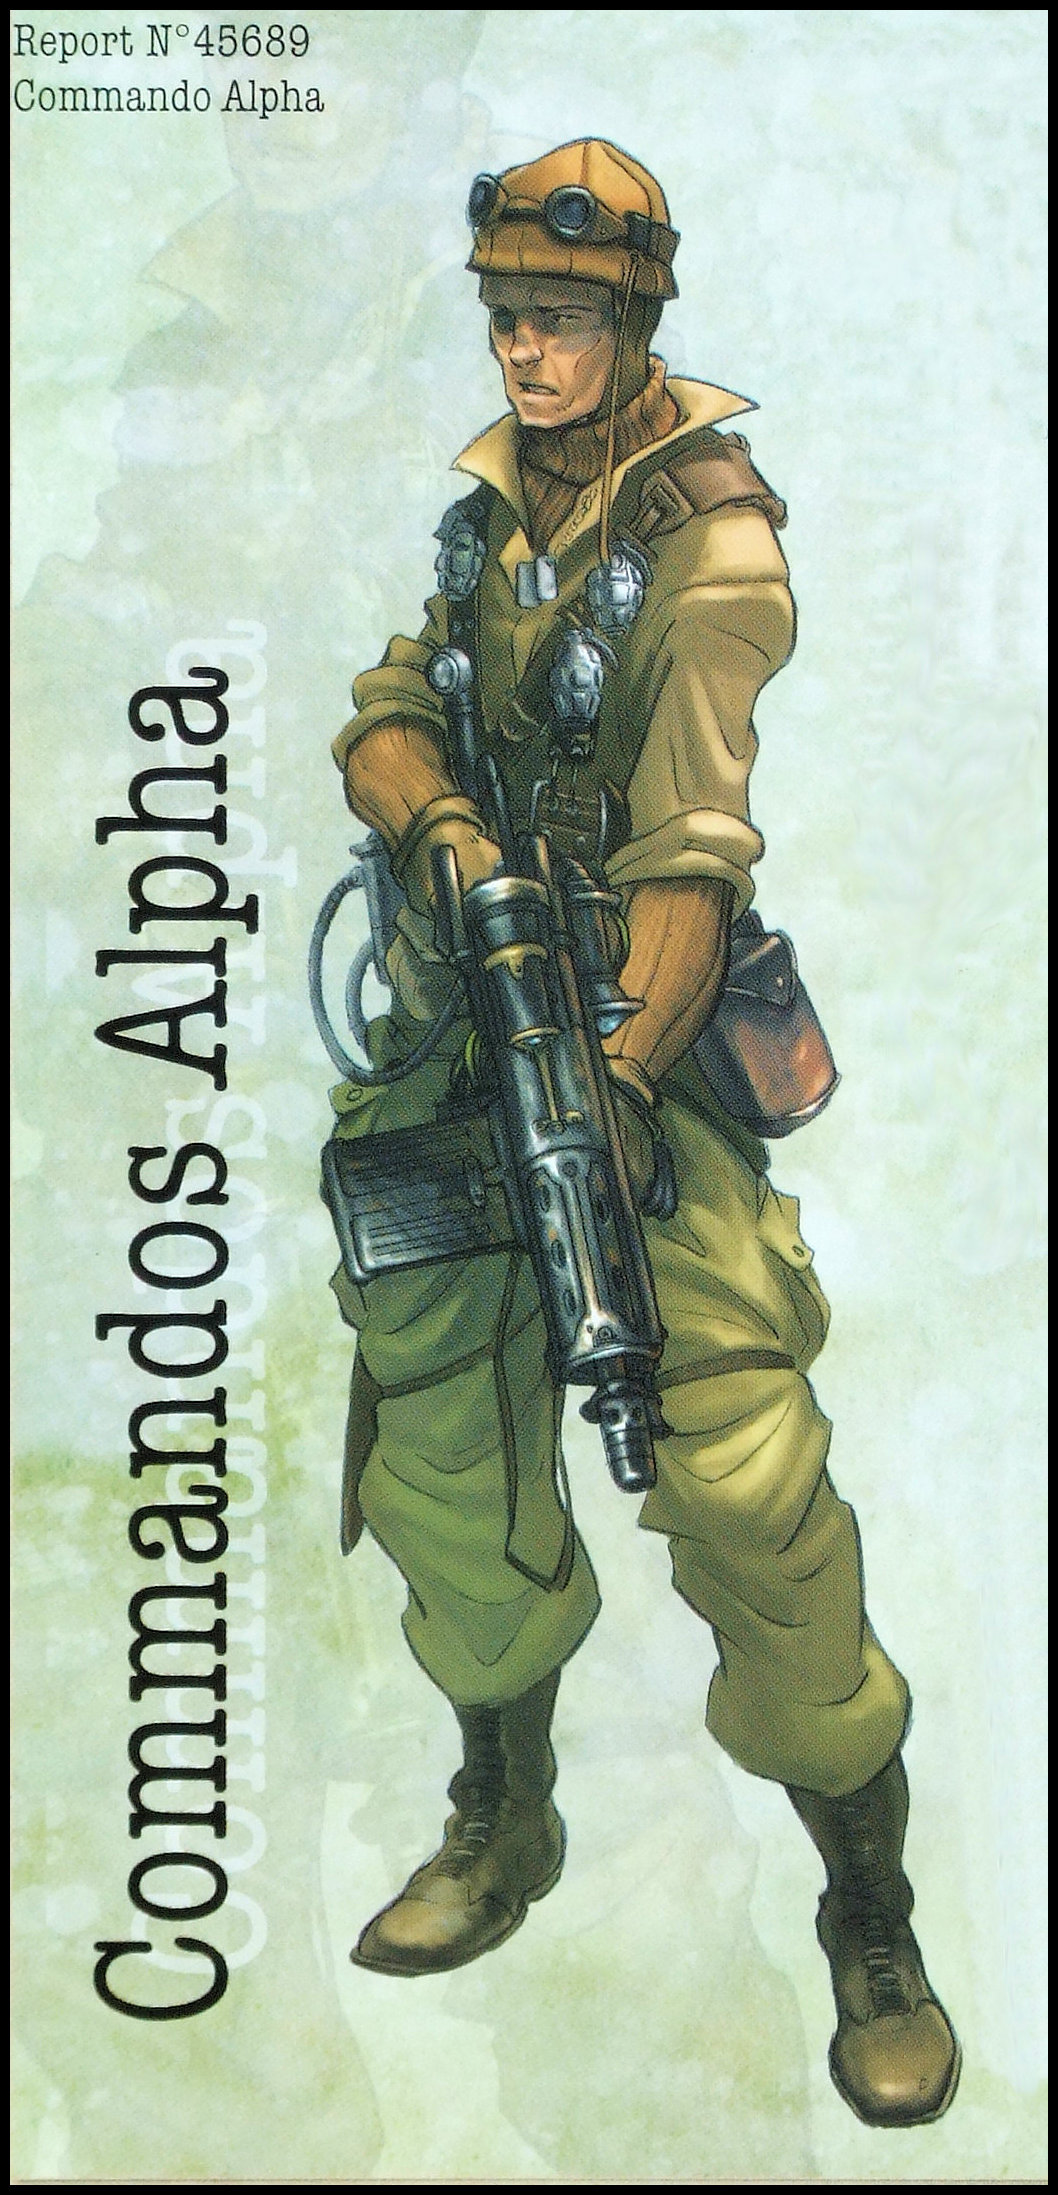 Tannhauser - Rulebook Artwork, Commandos Alpha